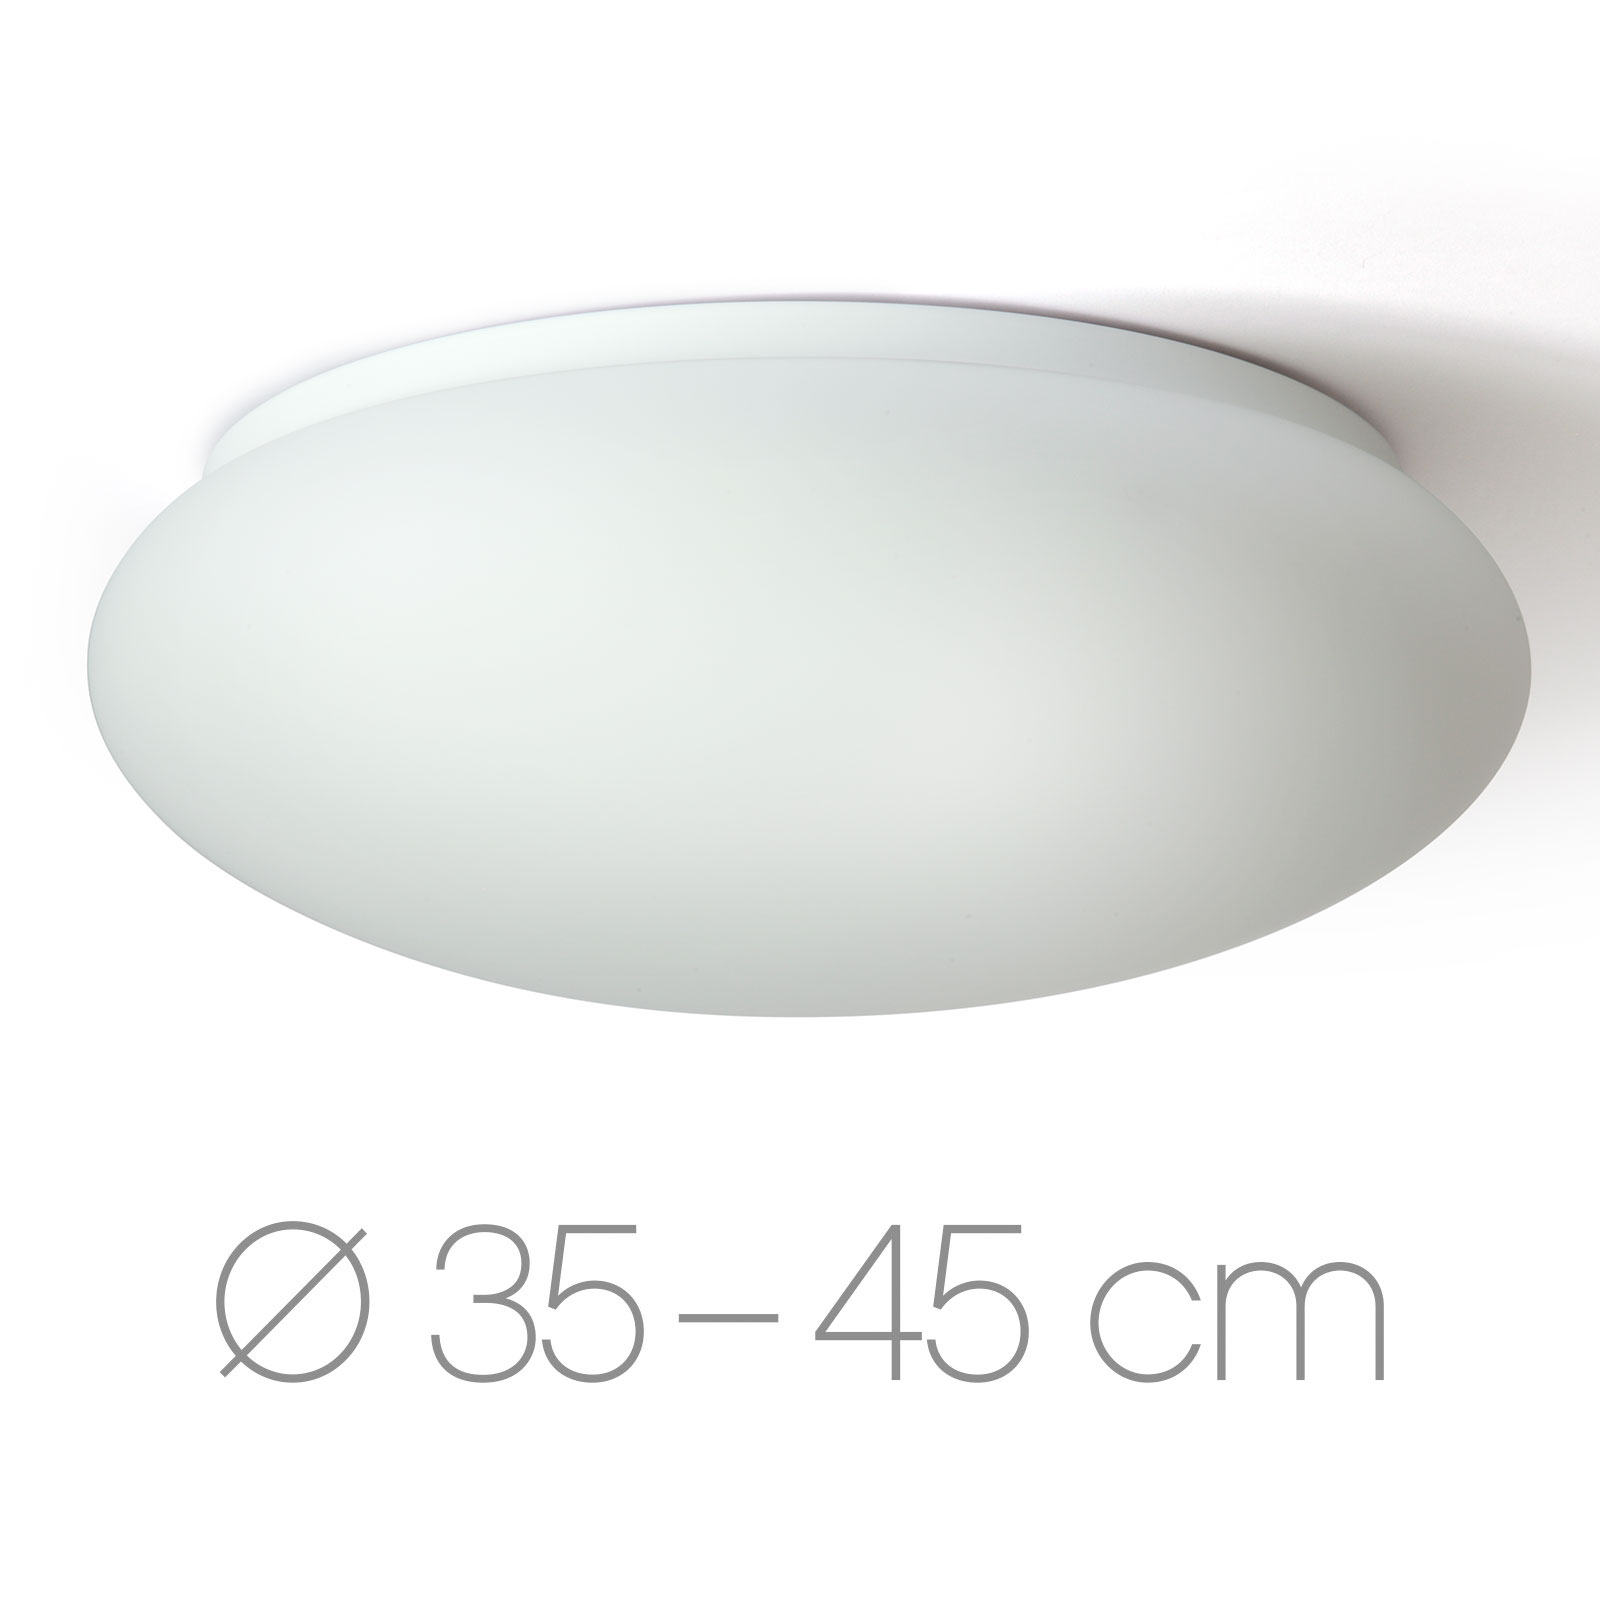 Runde gewölbte Opalglas-Deckenleuchte RAKIS, Ø 35 / 45 cm